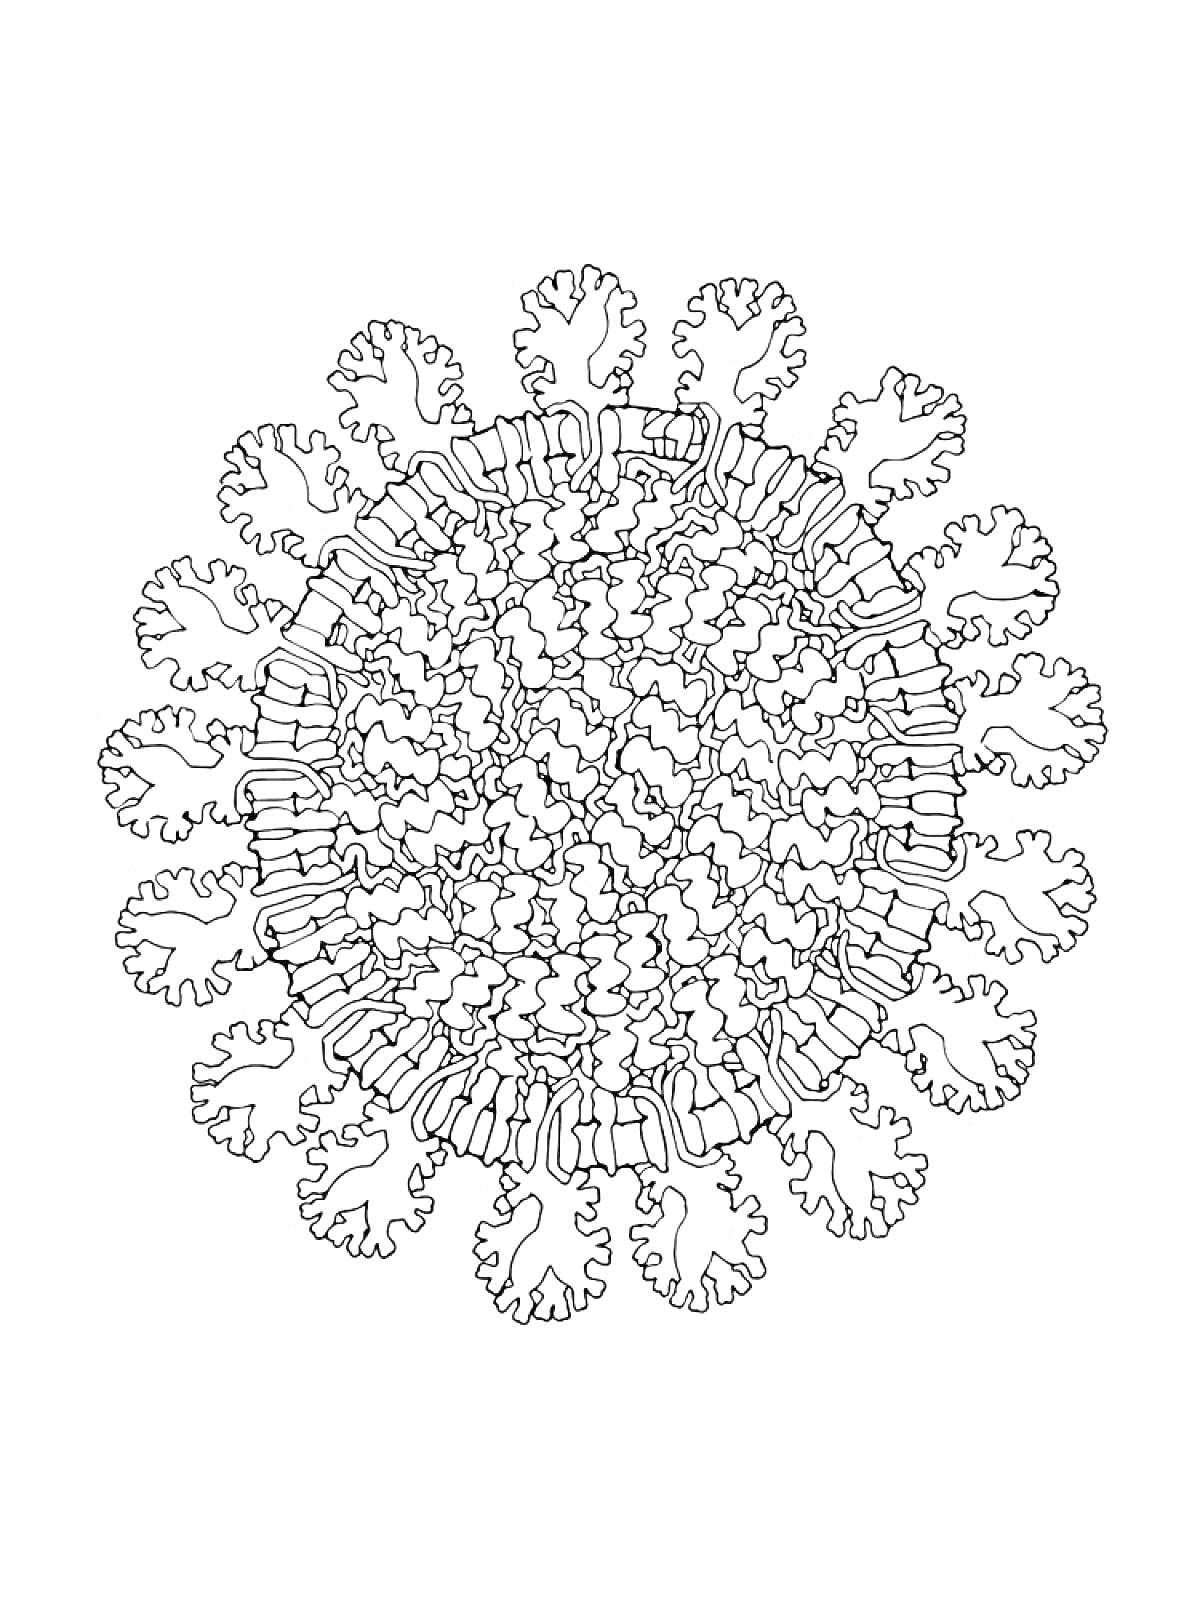 Изображение коронавируса с детализированными шипами и мембраной